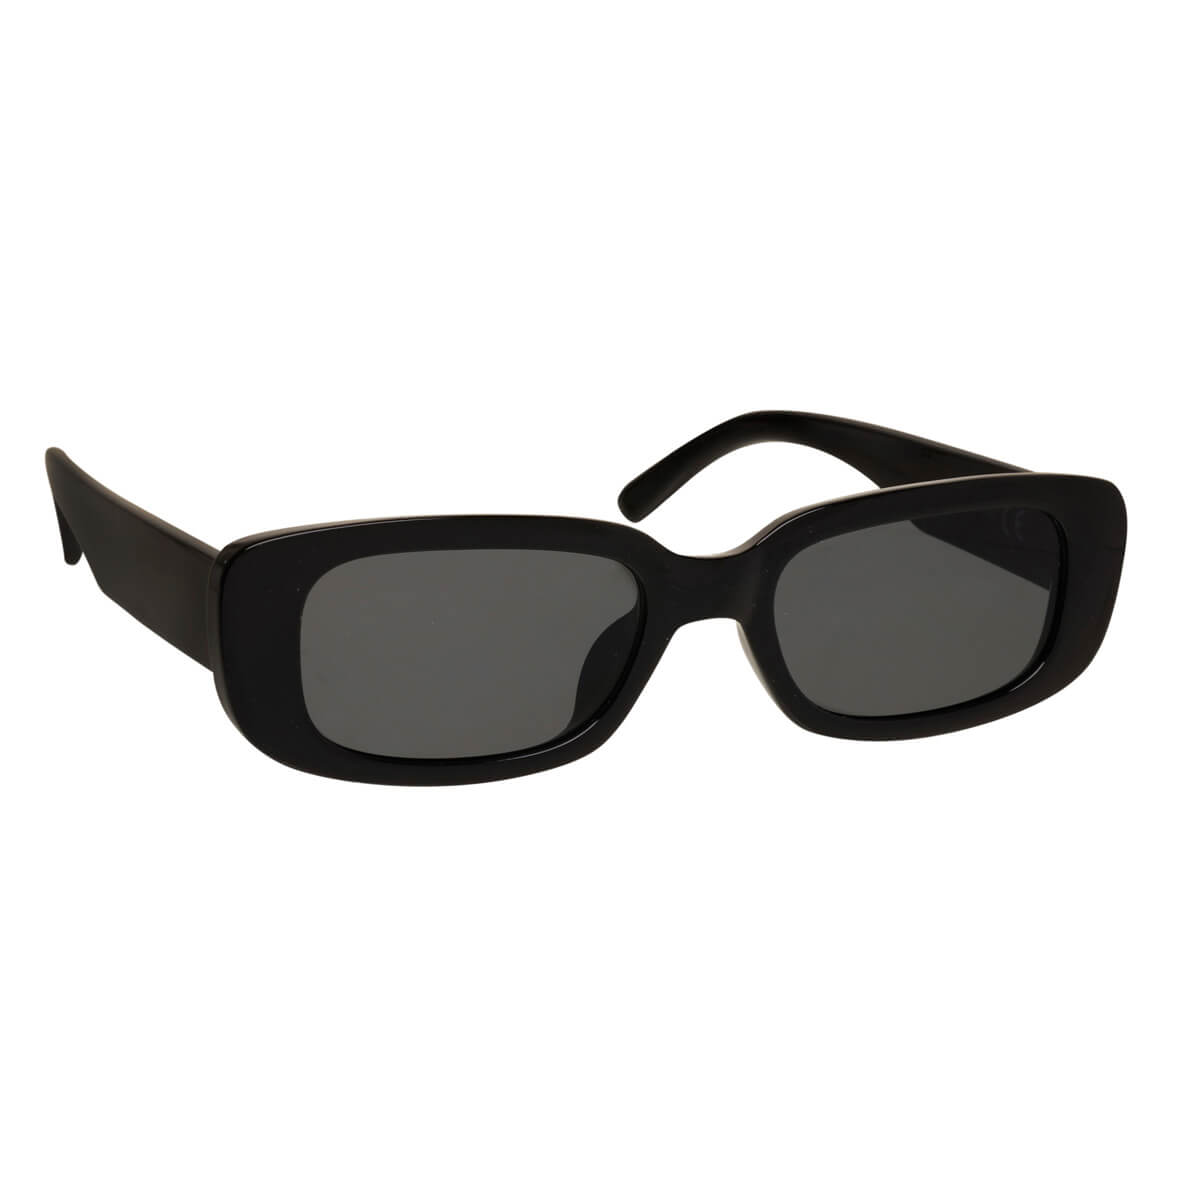 Rectangular sunglasses unisex